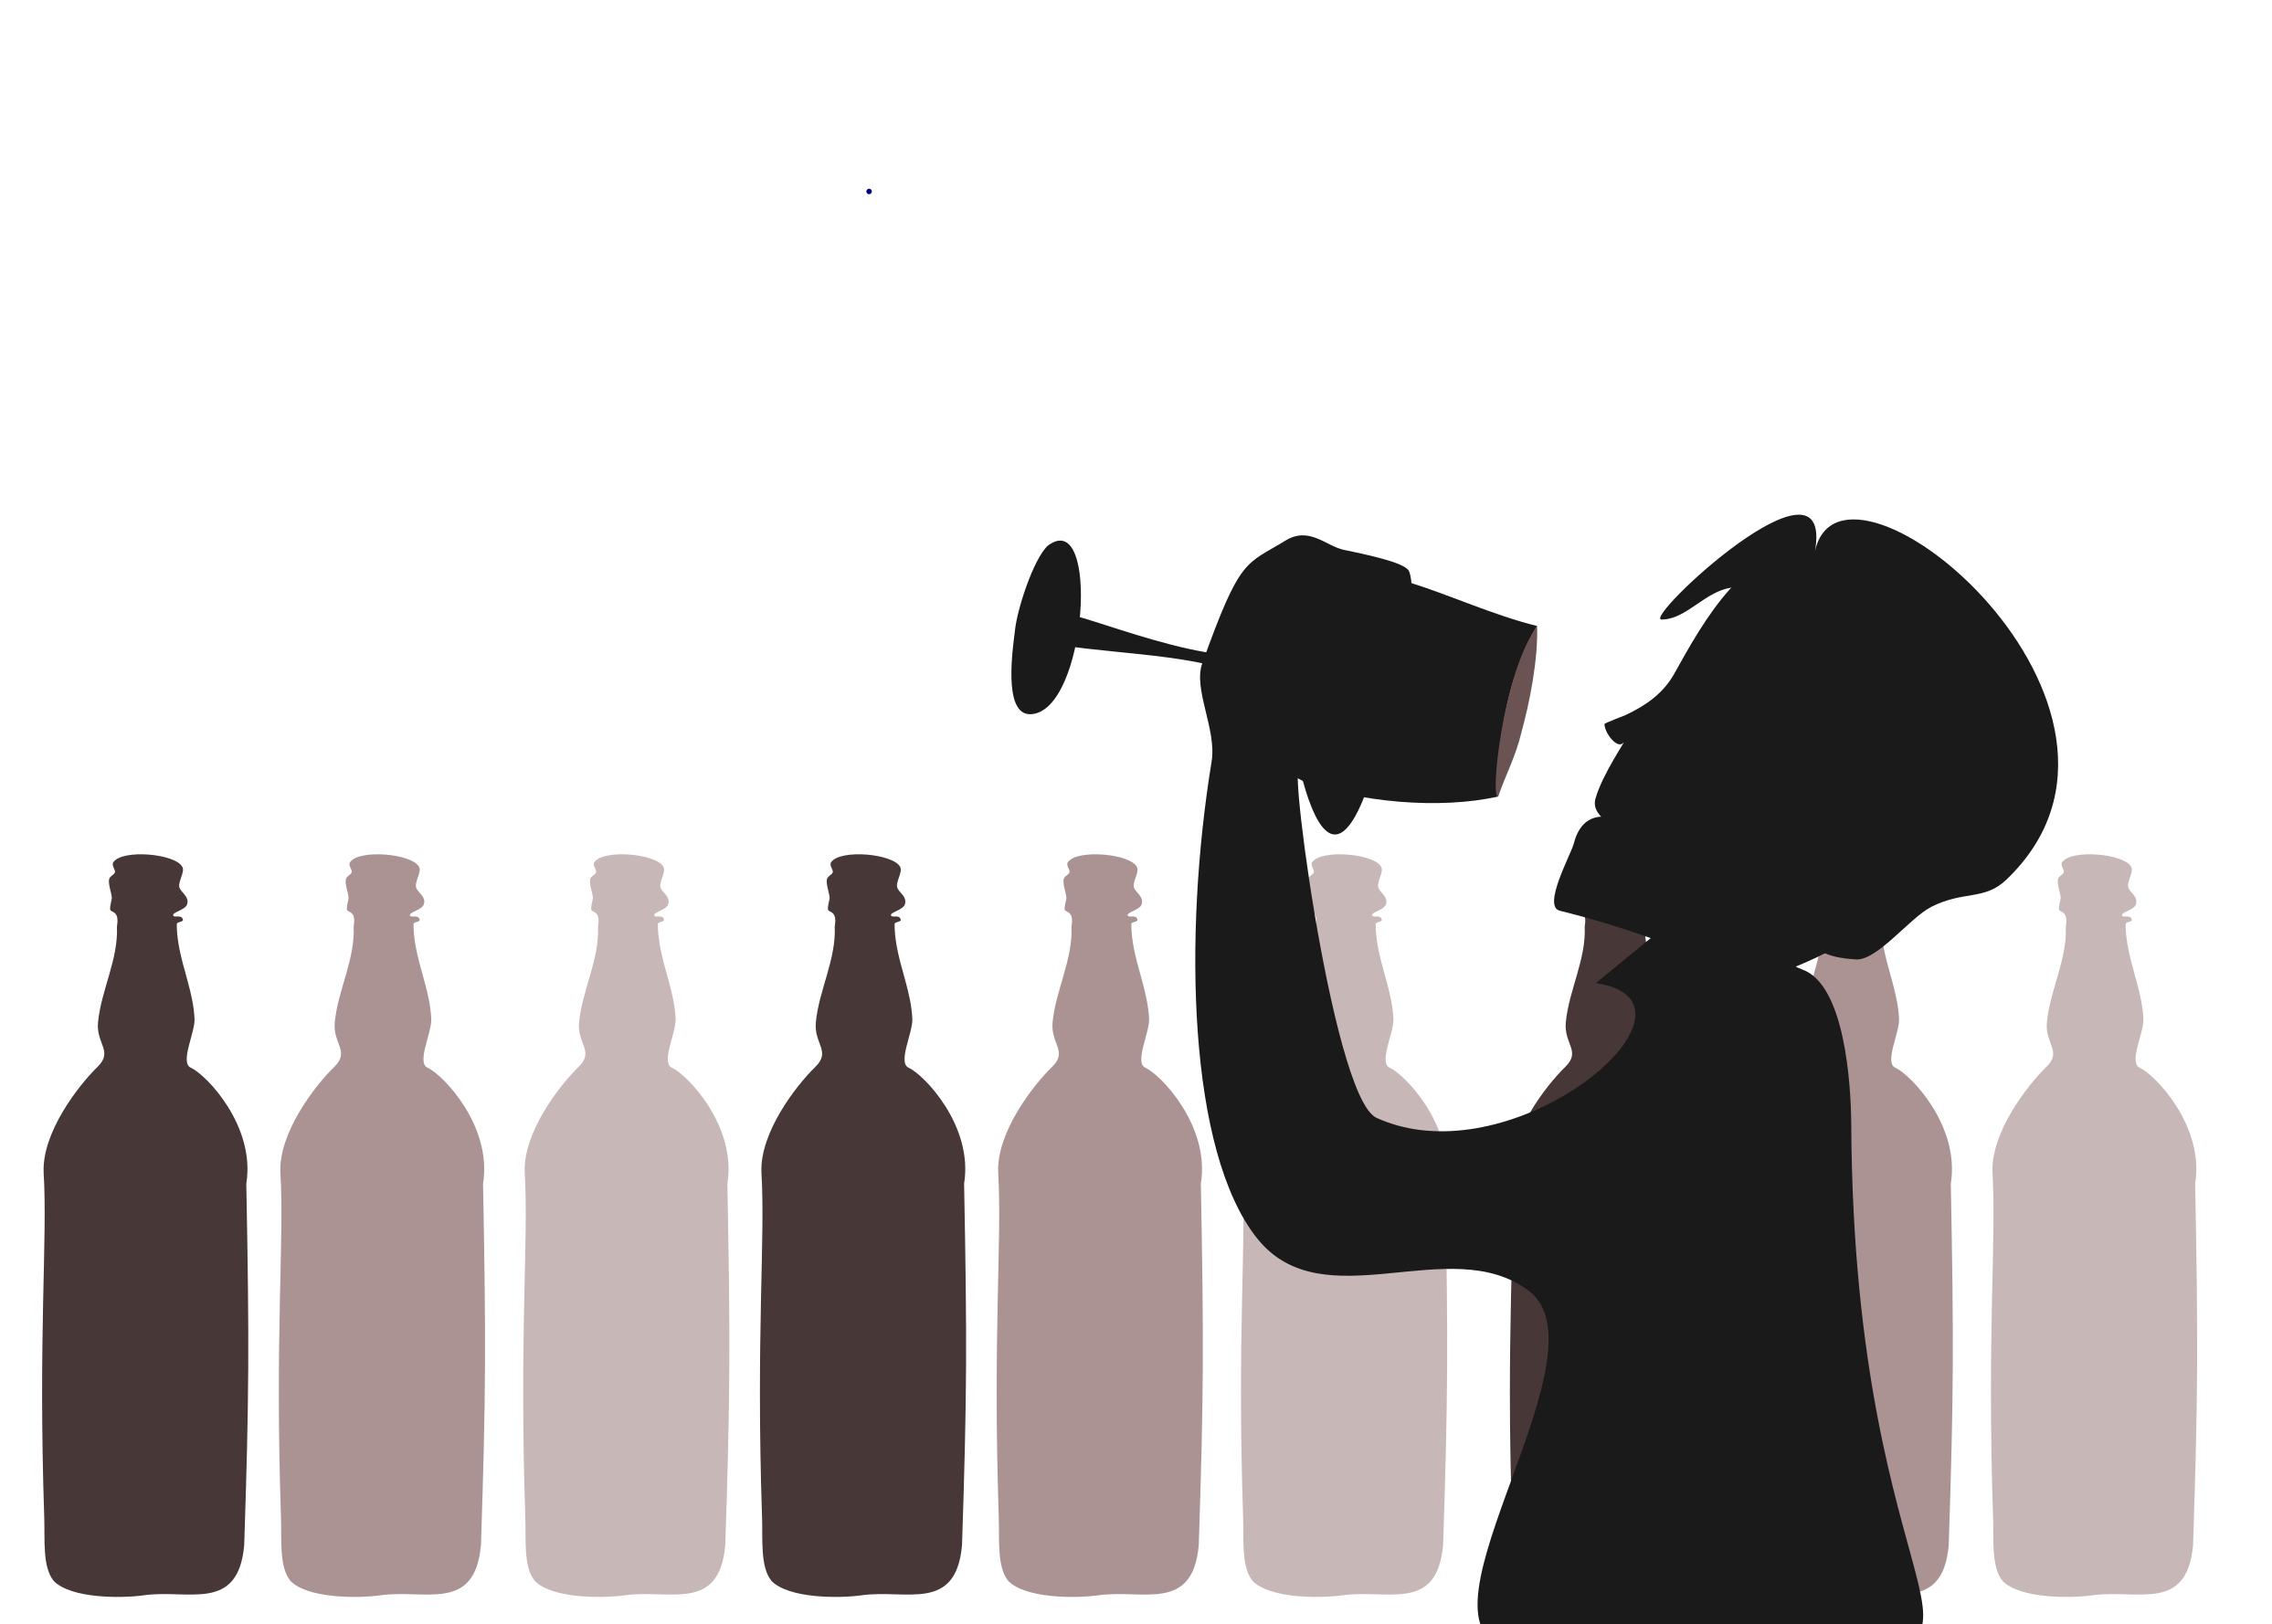 Grafika 2D w formie cieni  - człowiek podnoszący kieliszek do ust po prawej stronie, a w tle stojące butelki. Wszystko w brązowo-beżowej kolorystyce. 